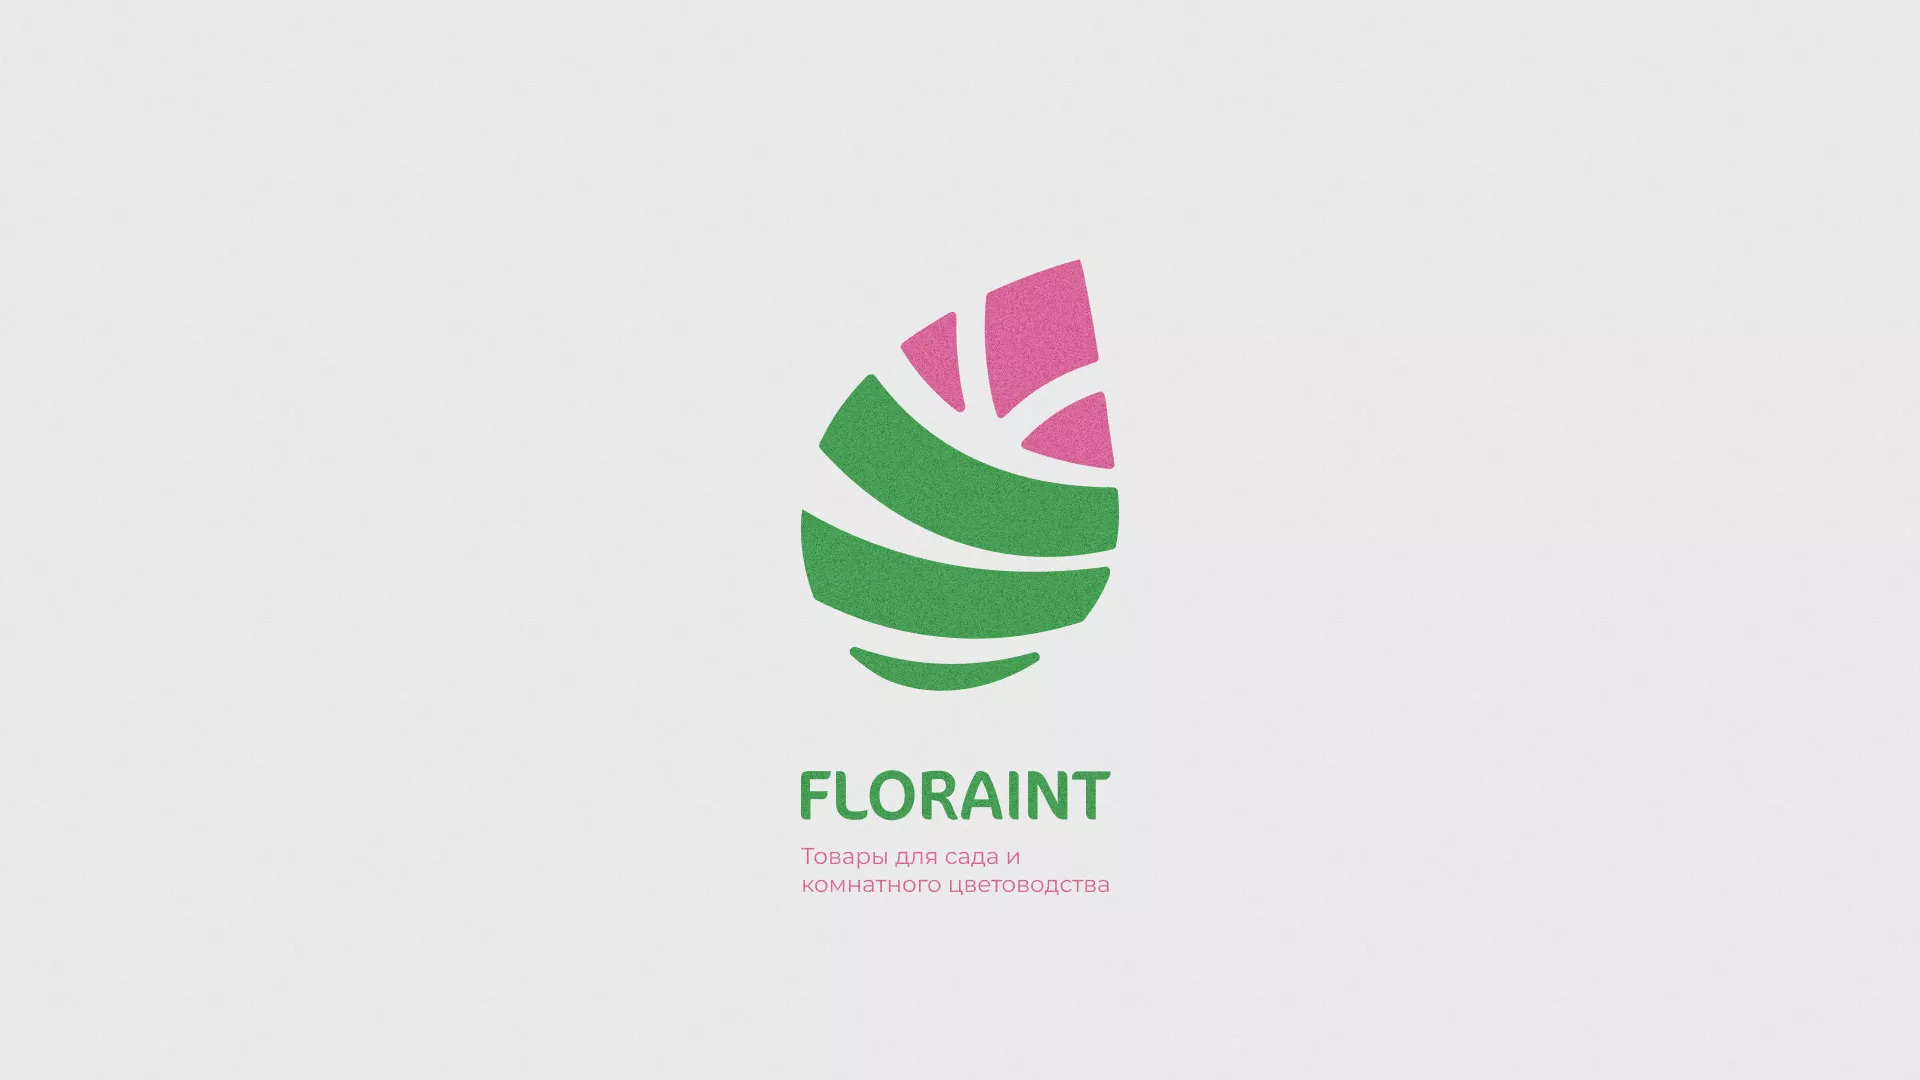 Разработка оформления профиля Instagram для магазина «Floraint» в Кологриве